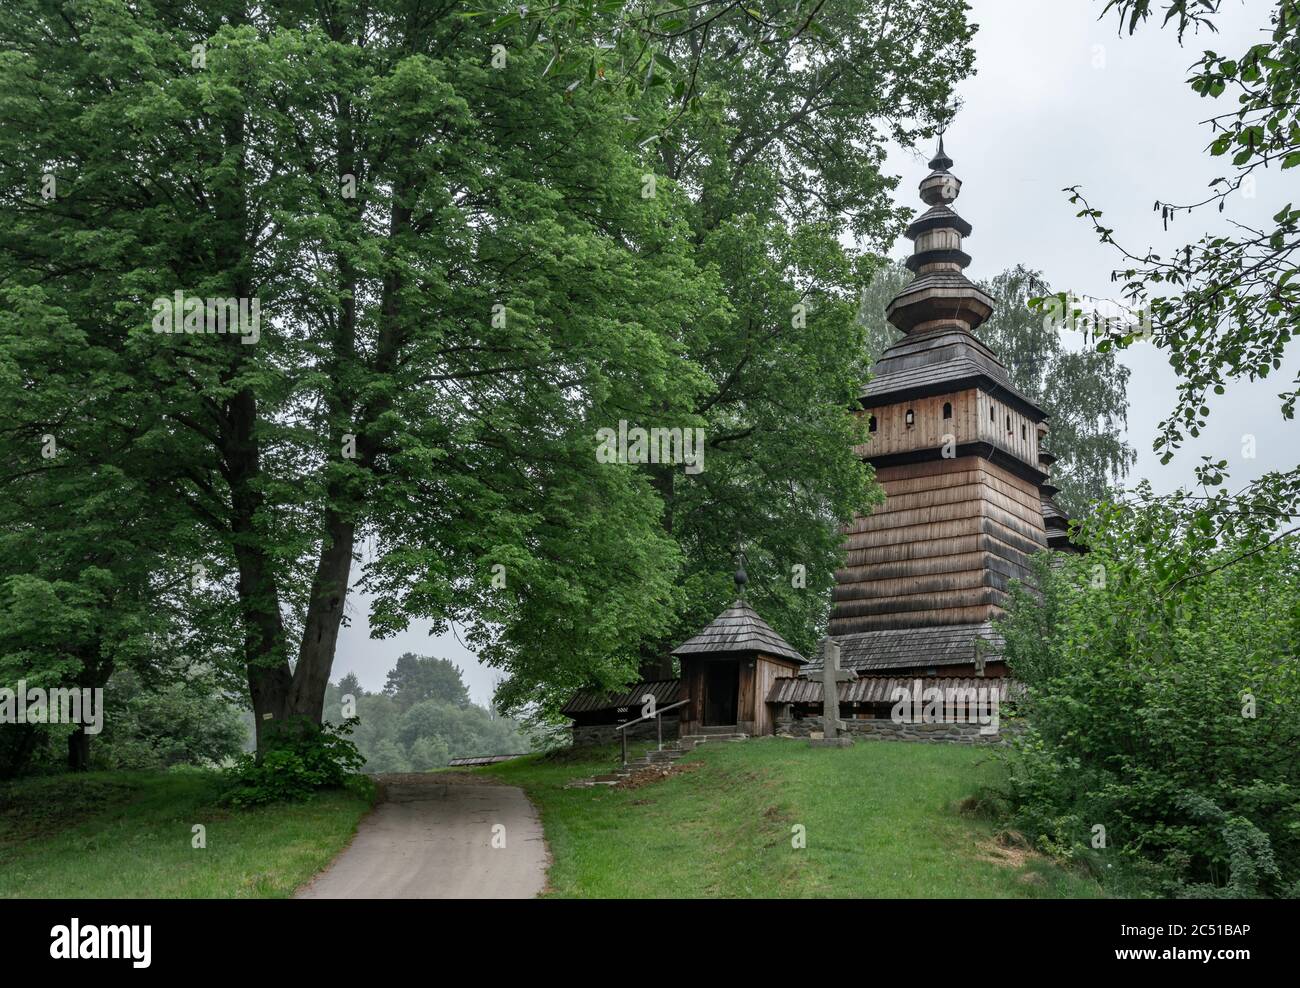 Chiesa cattolica greca in legno del 19 ° secolo a Kotan, attualmente una chiesa cattolica. Beskid Niski, Polonia, Europa Foto Stock